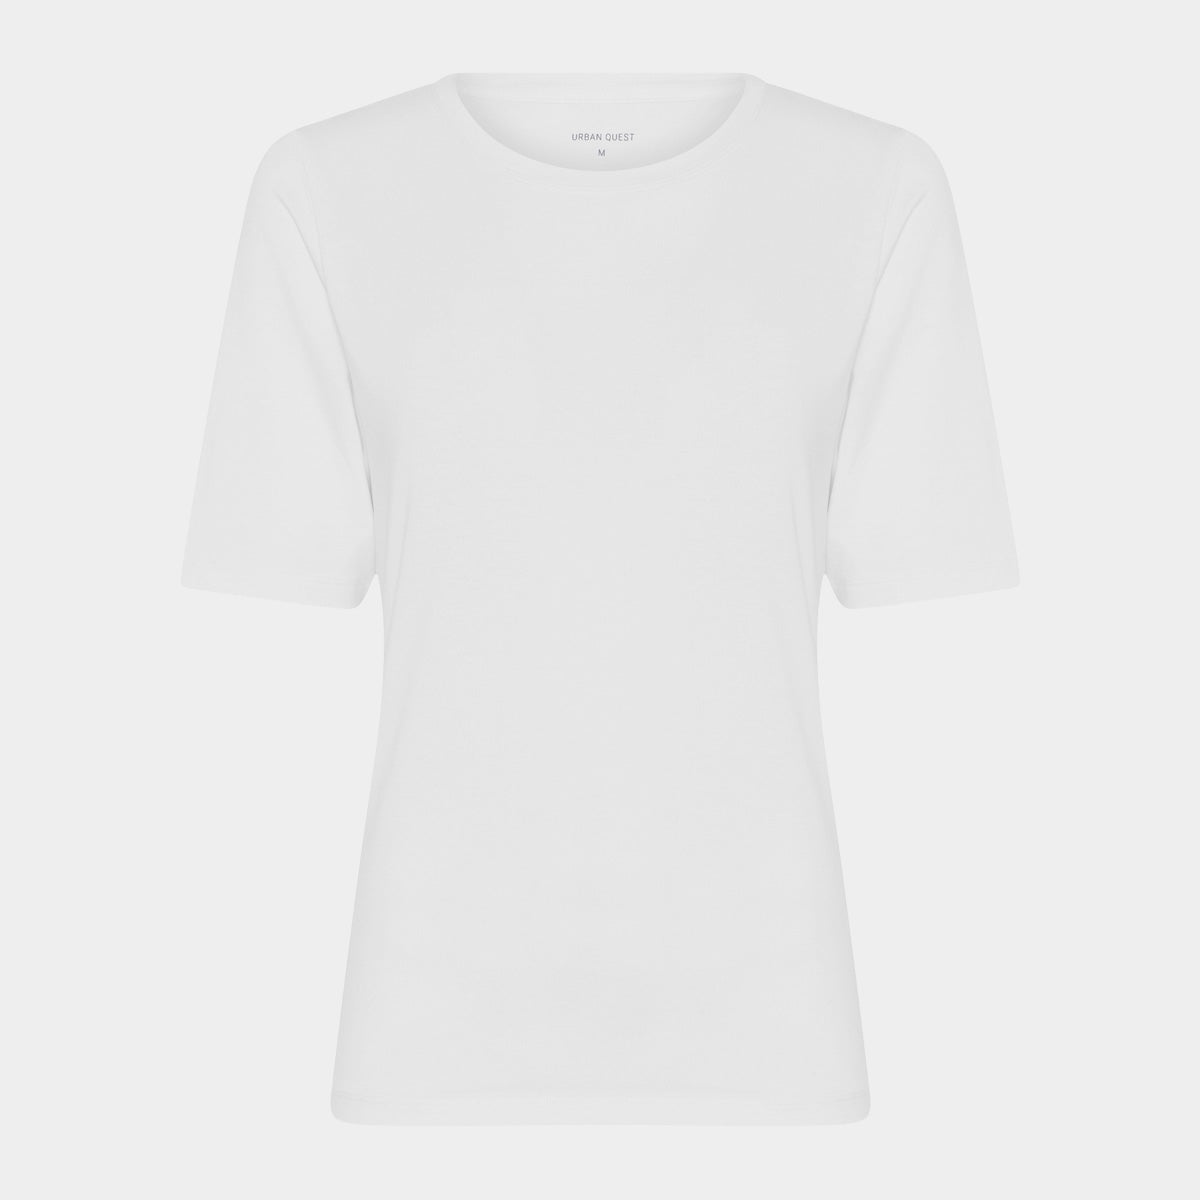 Billede af Hvid slim fit bambus t-shirt fra Urban Quest, M